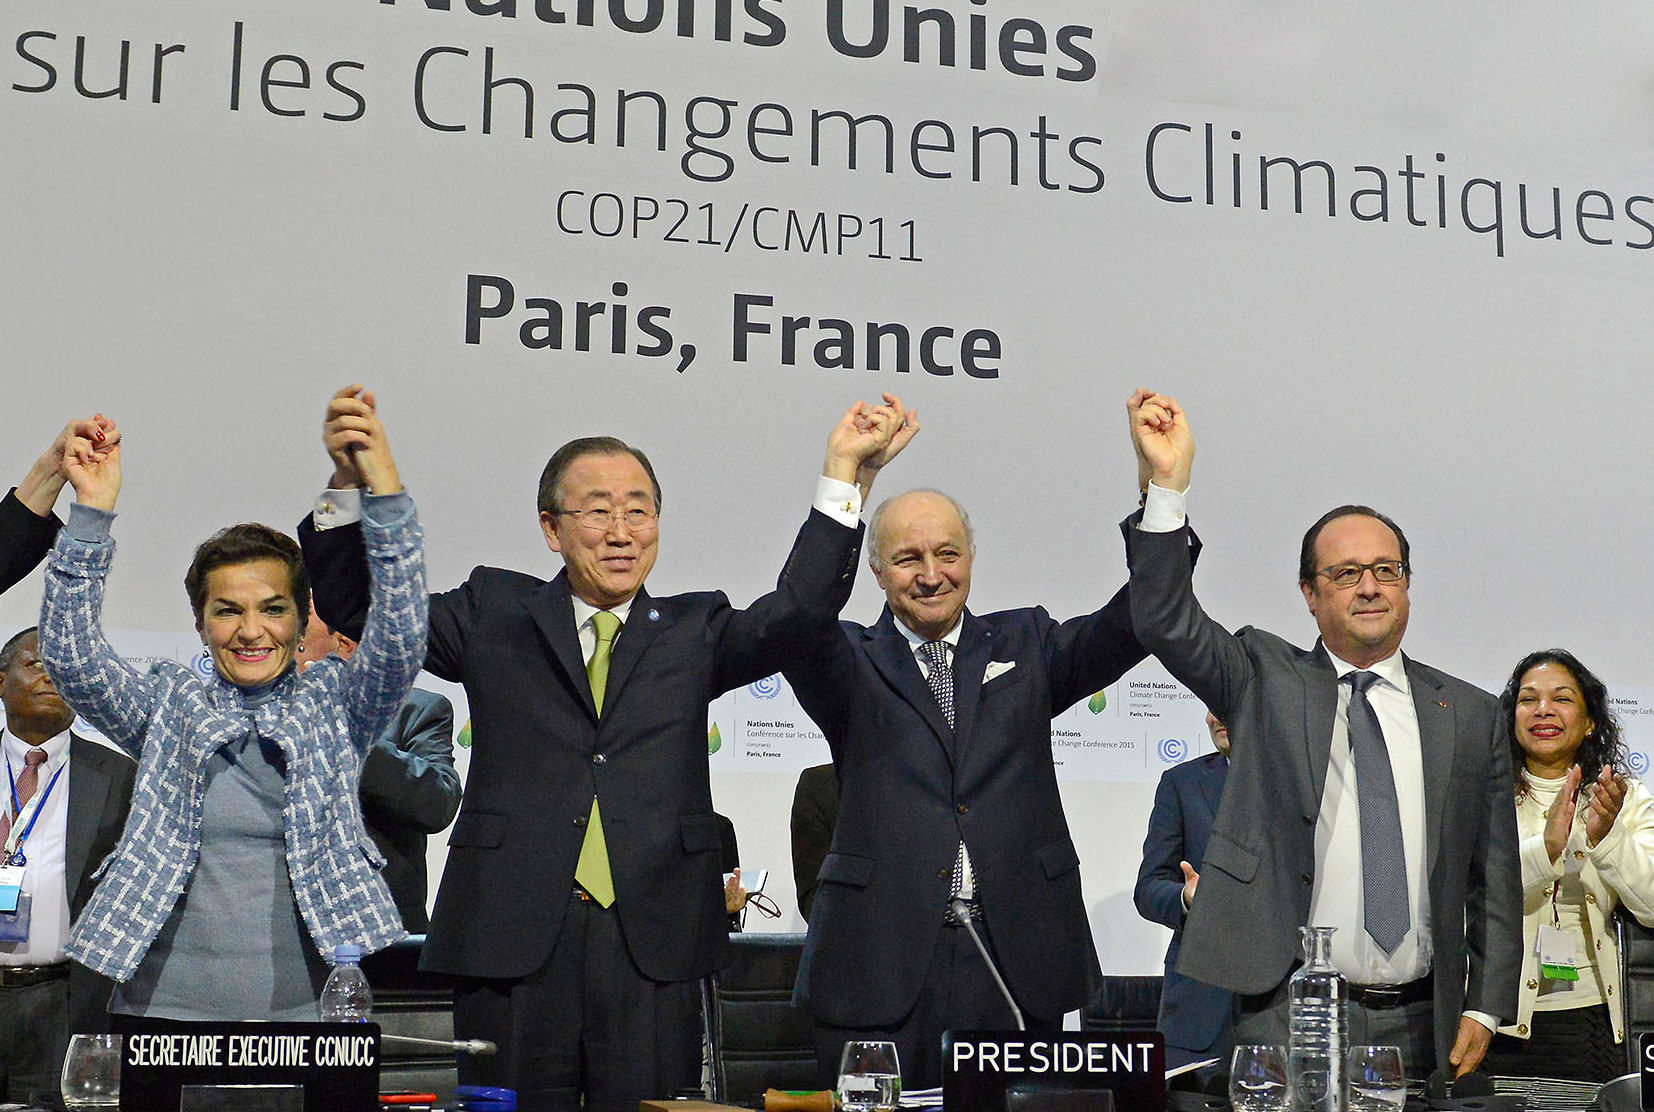 2015 Paris Agreement